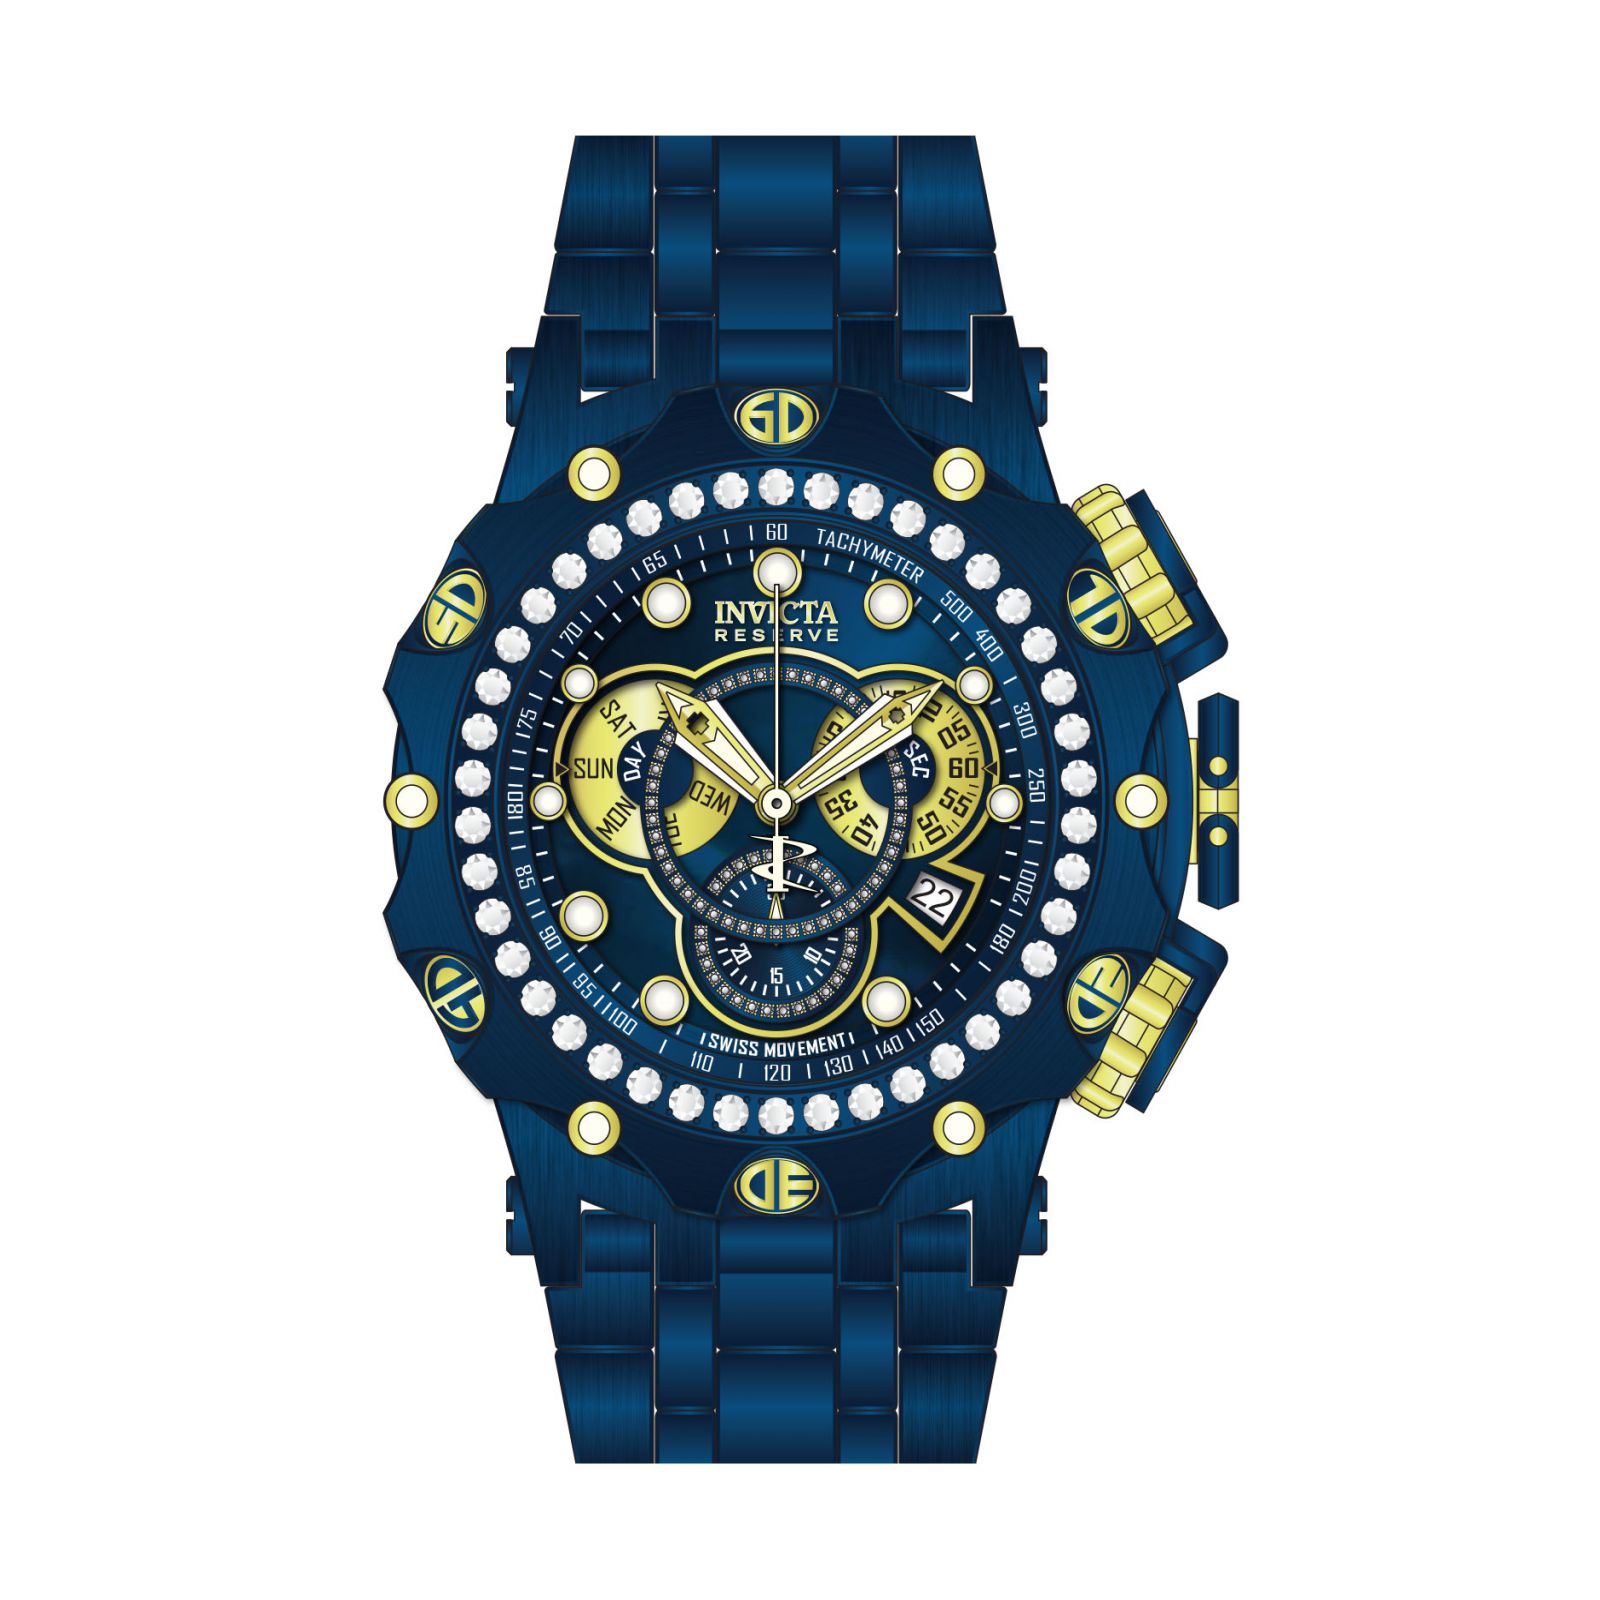 Reloj Invicta 35561 Azul Oscuro Hombres